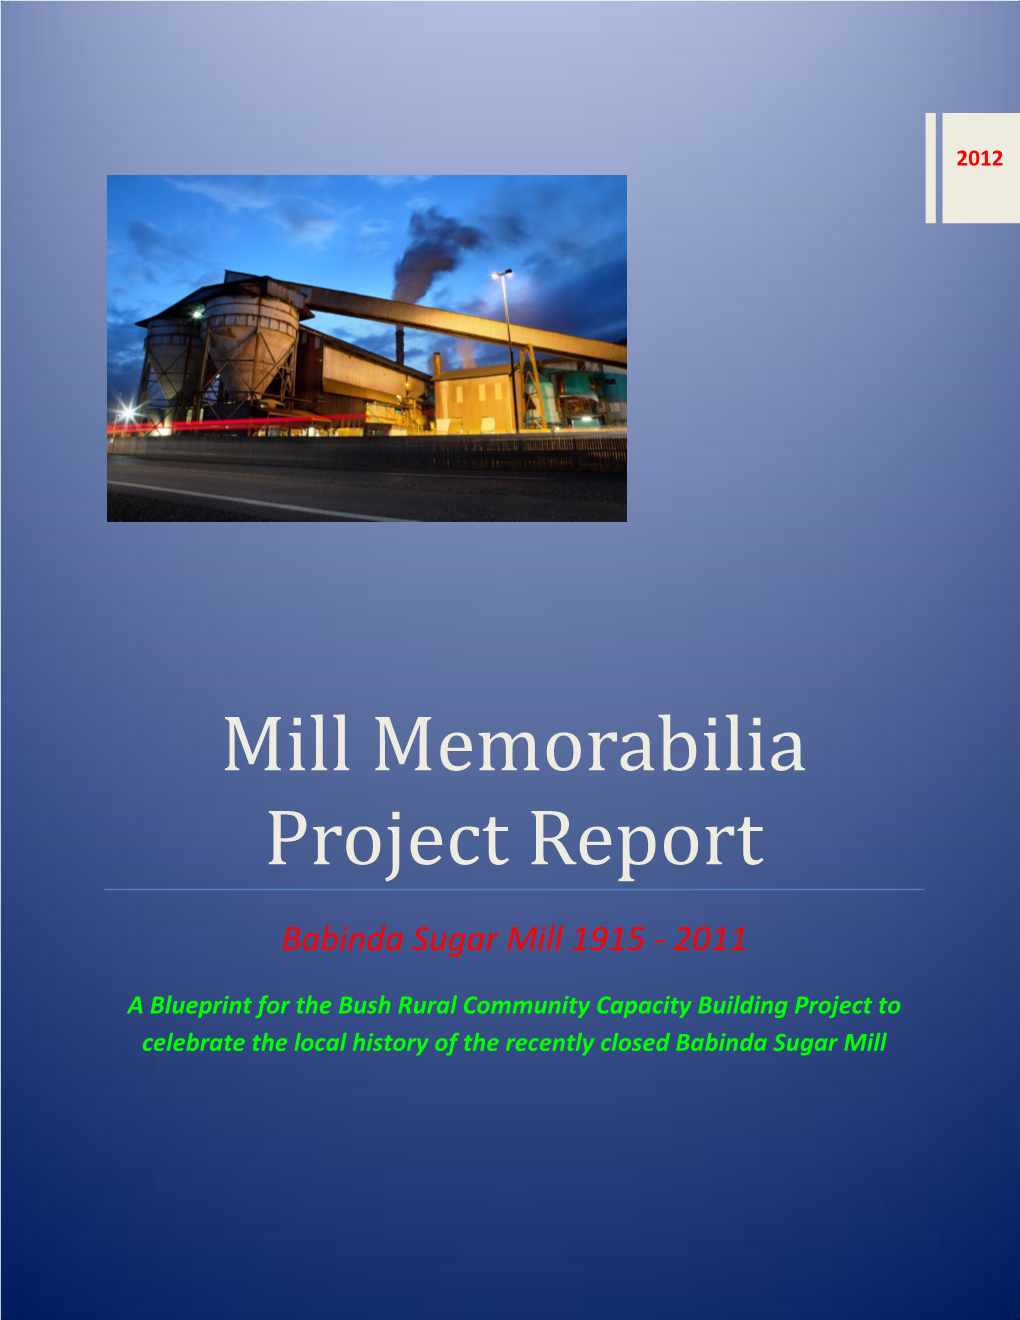 Mill Memorabilia Project Report